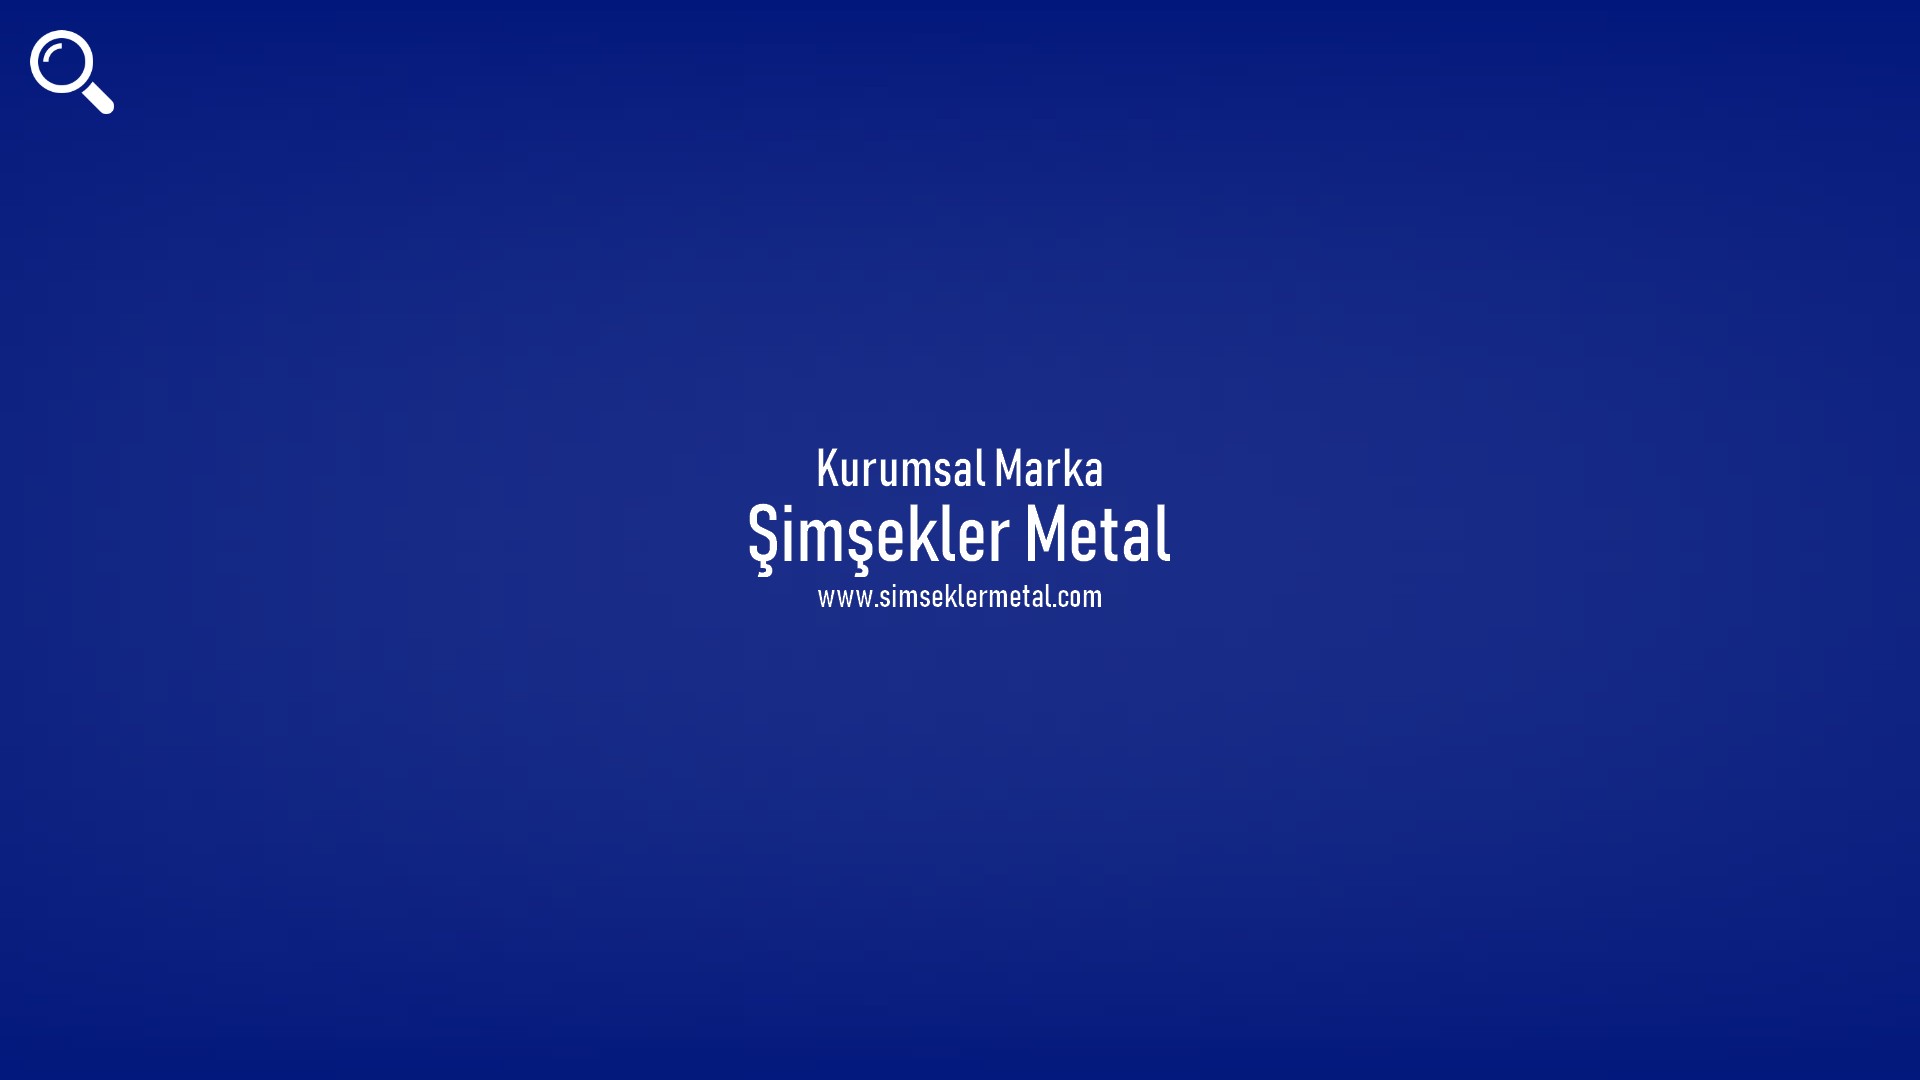 Şimşekler Metal başlıklı içeriğin resmi